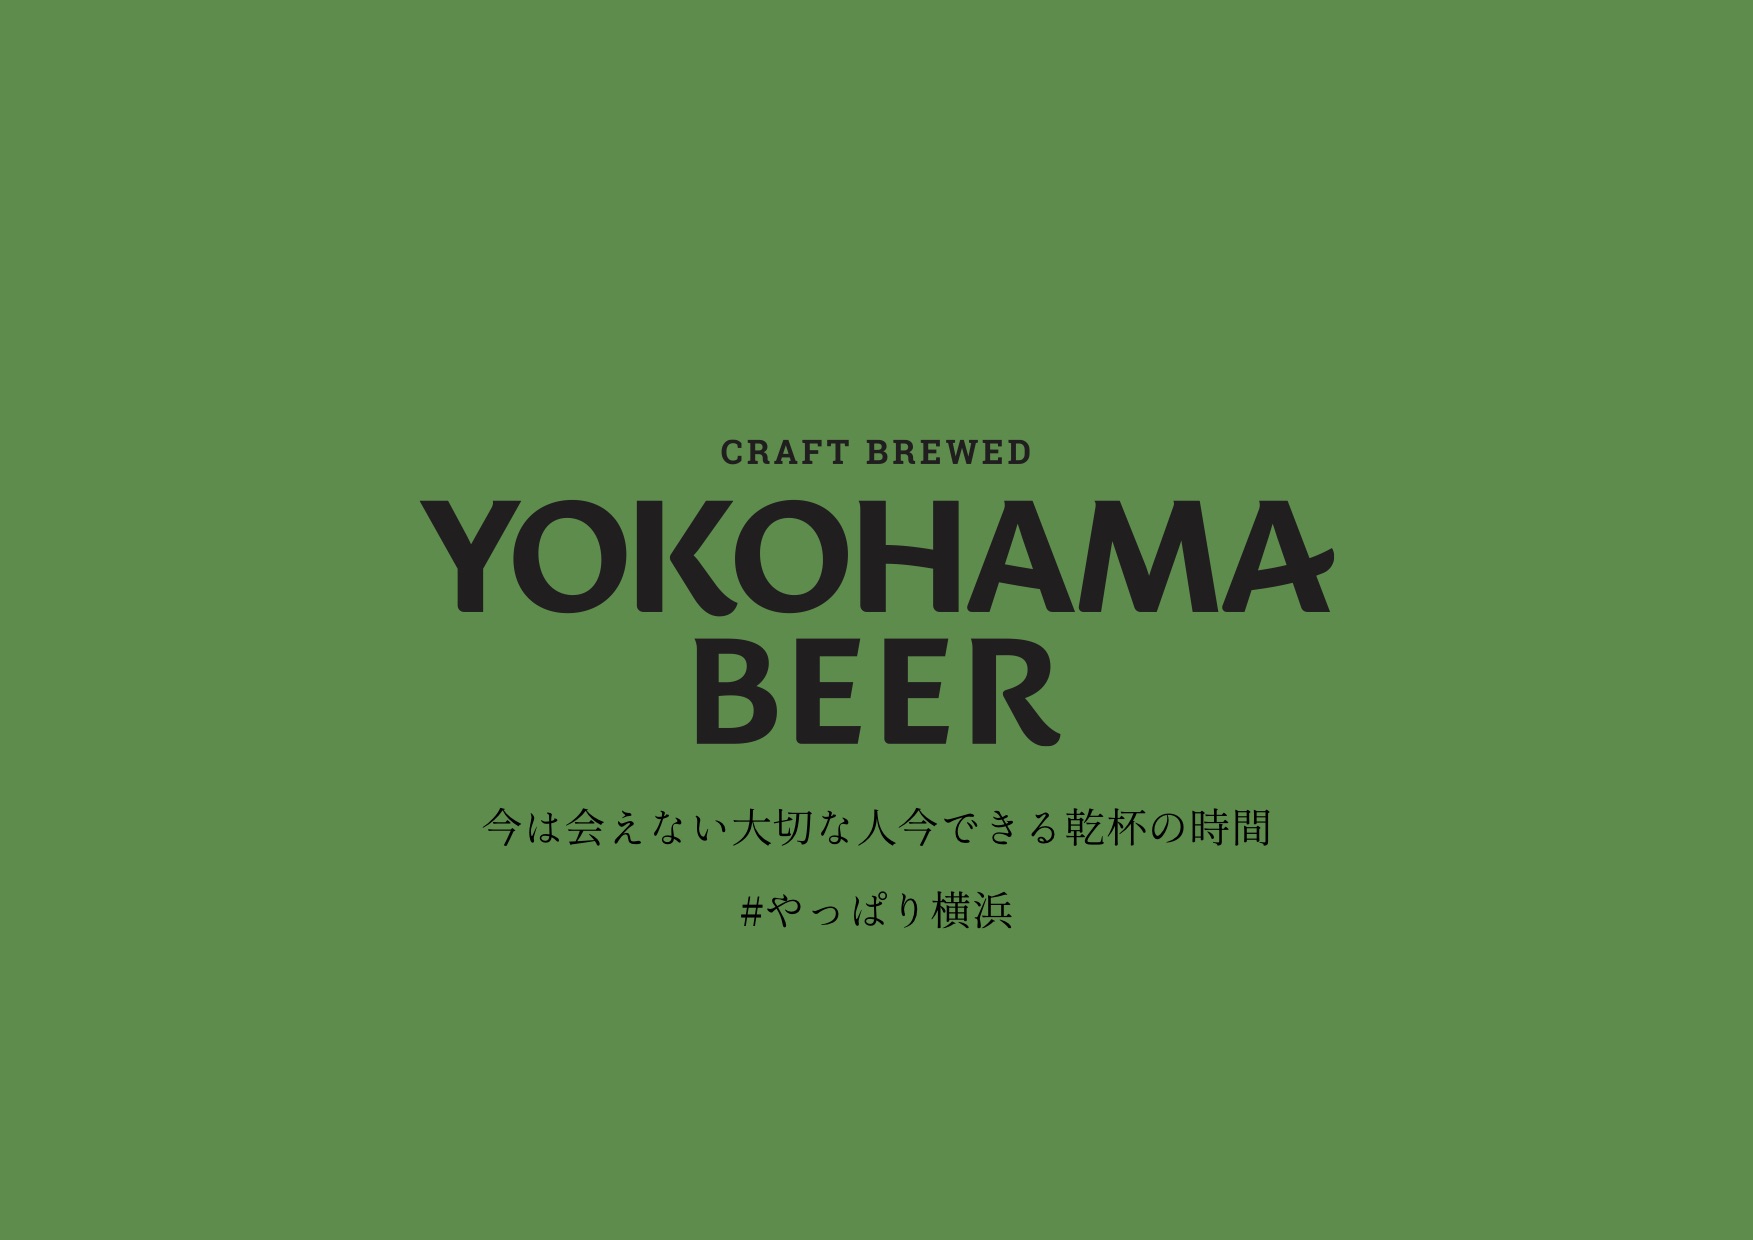 横浜ビール「#やっぱり横浜」キャンペーン